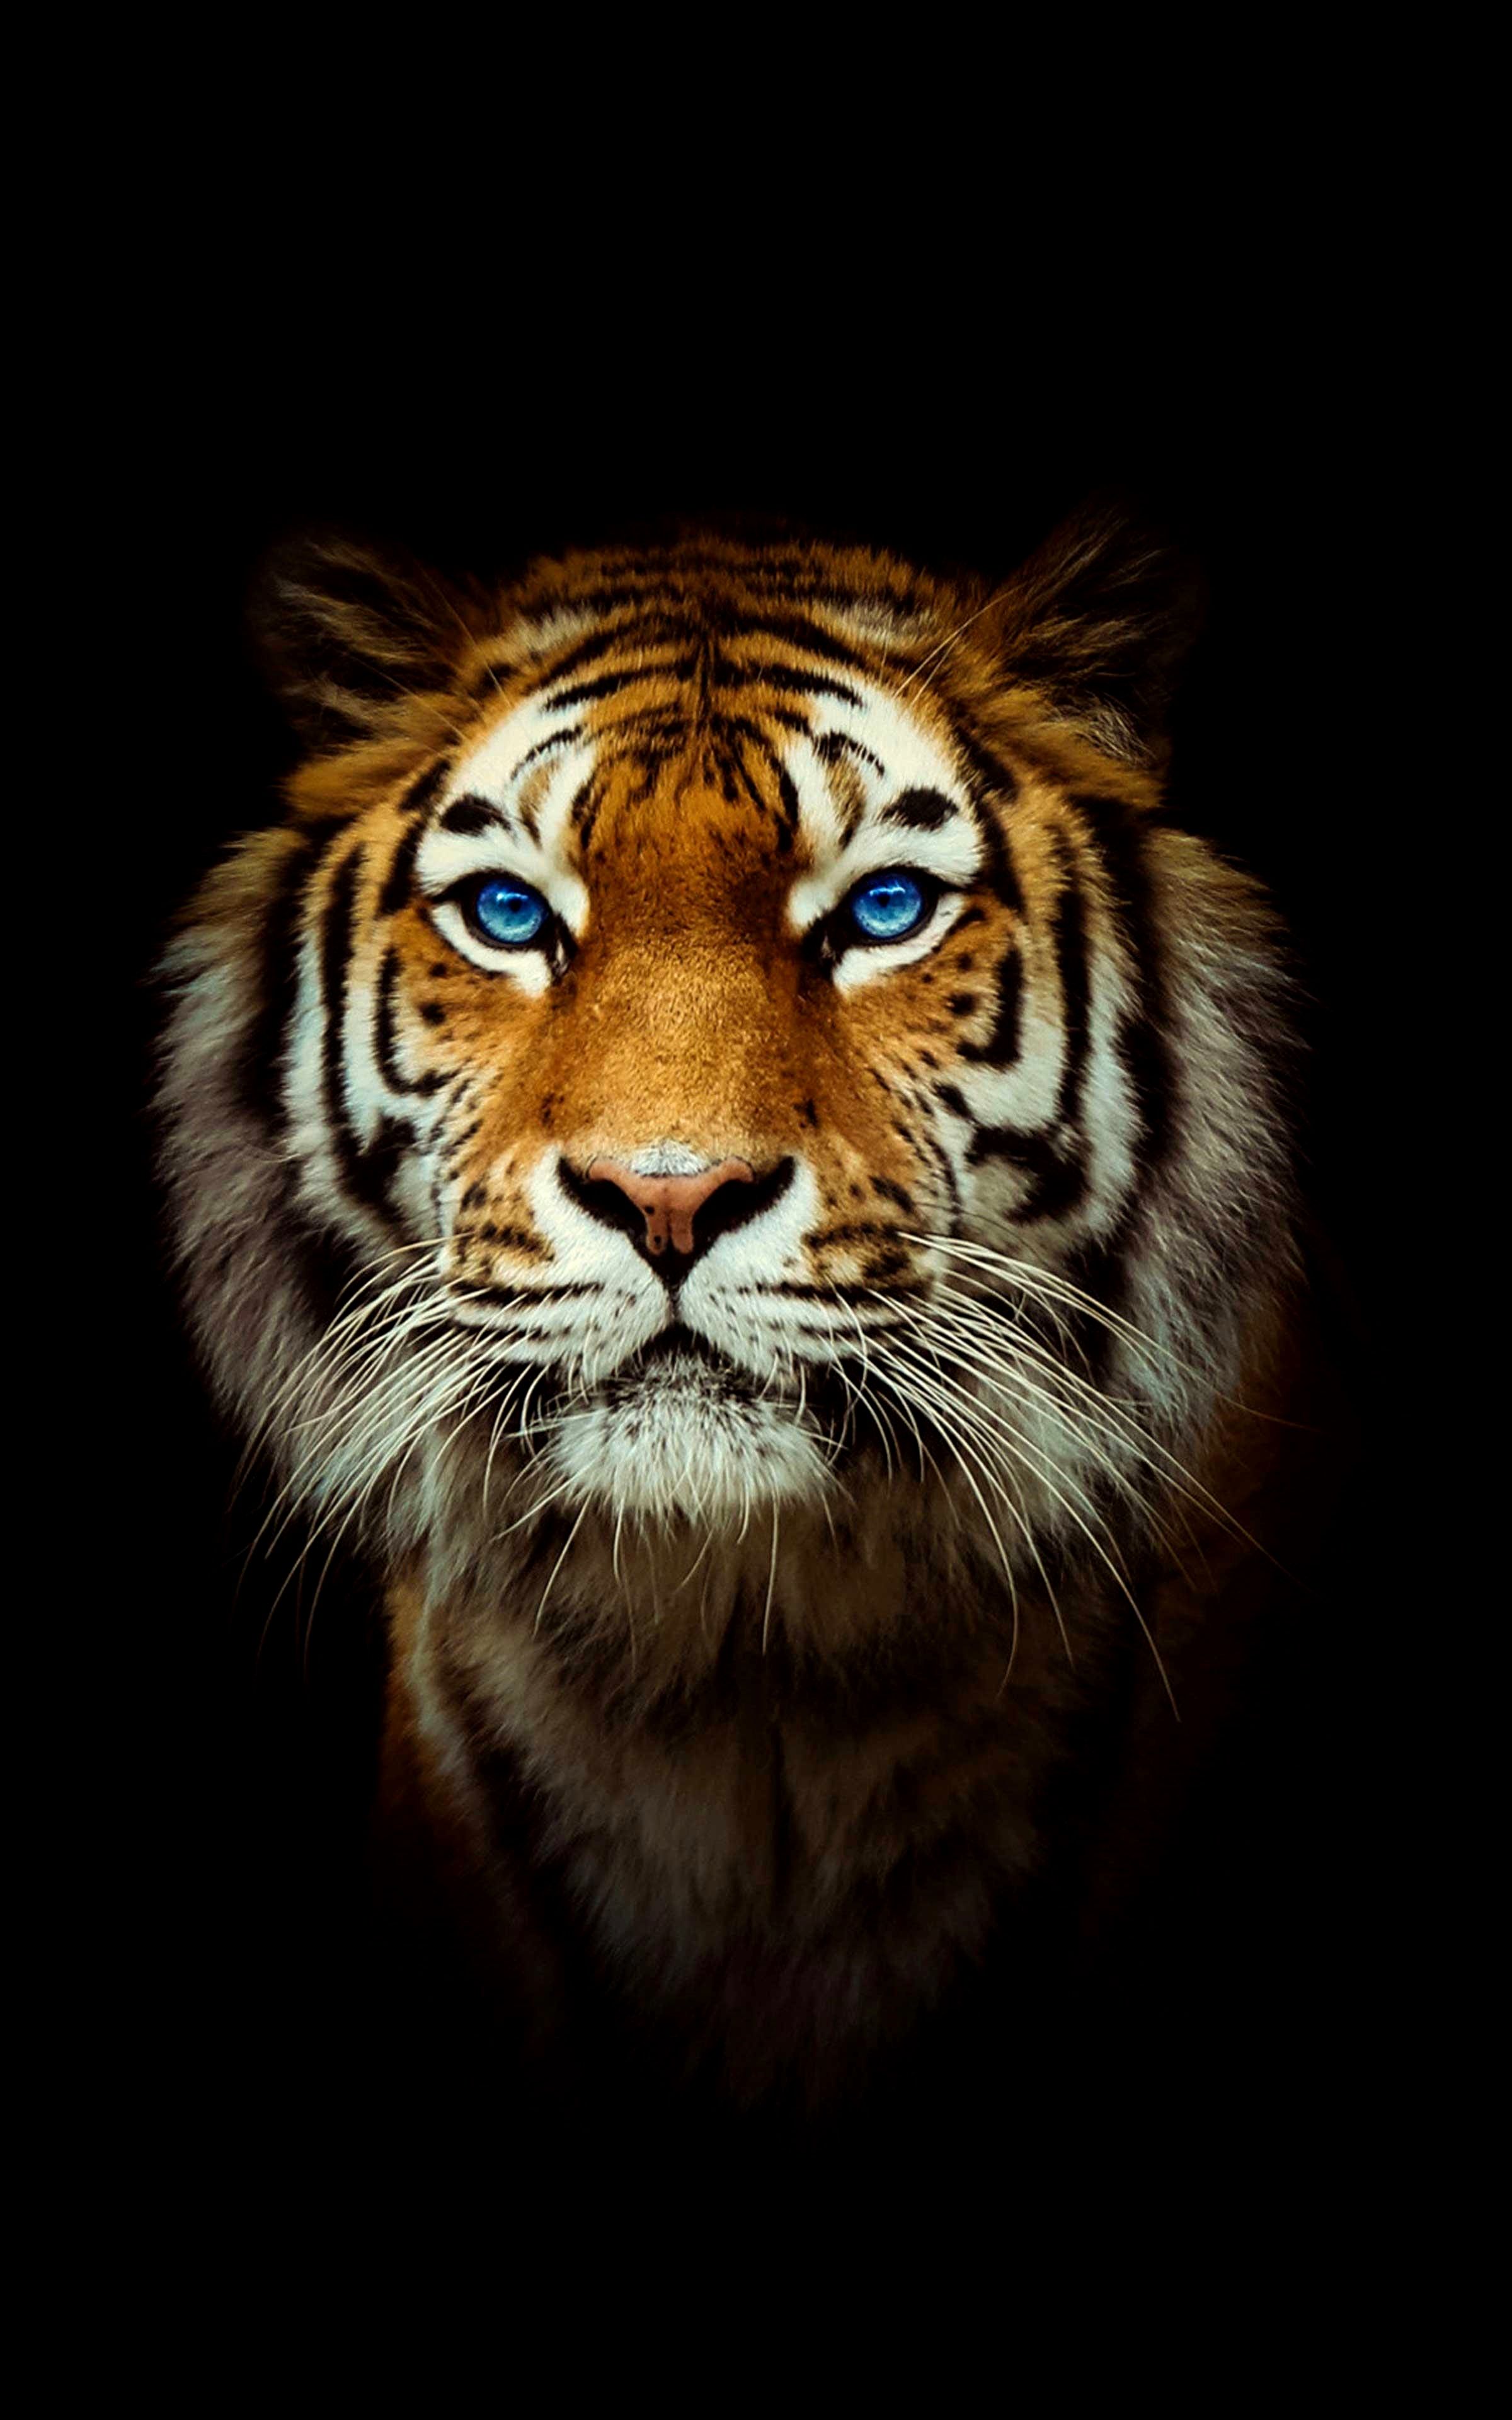 Tải về miễn phí hình nền hổ 4K Gallery Tiger wallpaper Tiger - Bạn đang tìm kiếm một bộ sưu tập hình nền hổ đẹp mắt và miễn phí? Hãy tải ngay về bộ ảnh HD này với độ phân giải cao và mẫu hình nền đa dạng. Bộ sưu tập này mang đến cho bạn cảm giác gần gũi hơn với thế giới động vật hoang dã, cùng với đó là những hình ảnh hổ đỉnh cao về mặt thẩm mỹ.